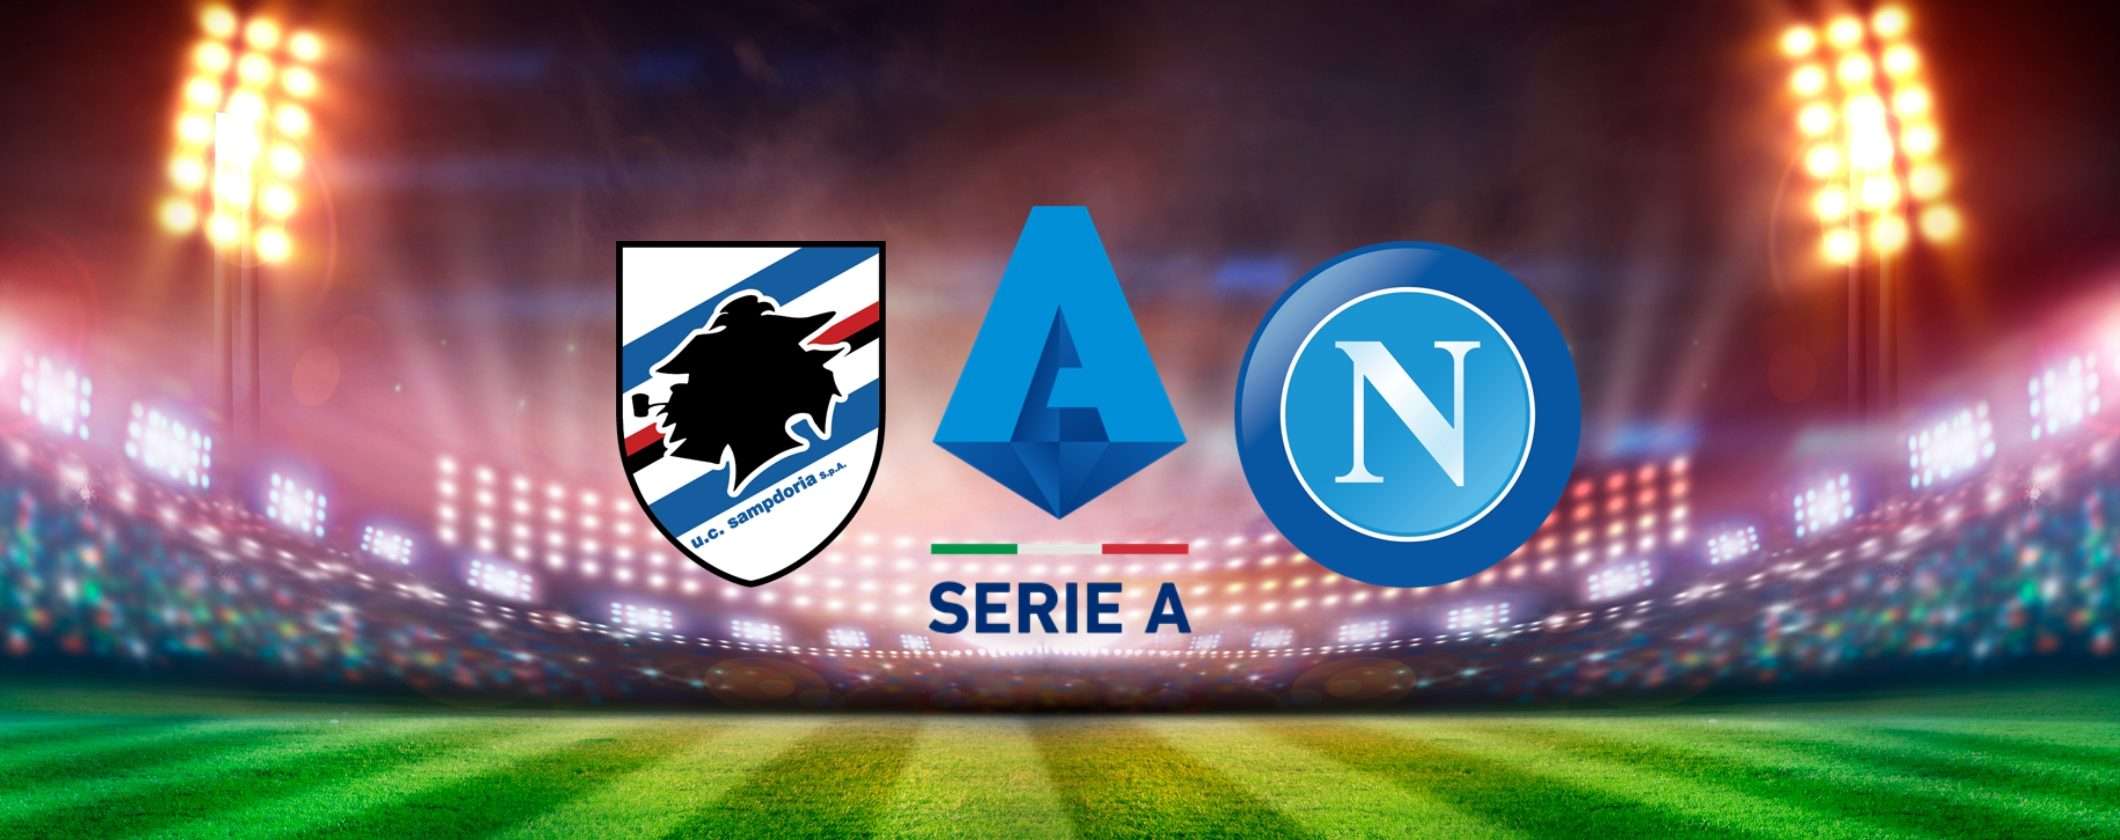 Sampdoria-Napoli: come vedere la partita in streaming dall'estero